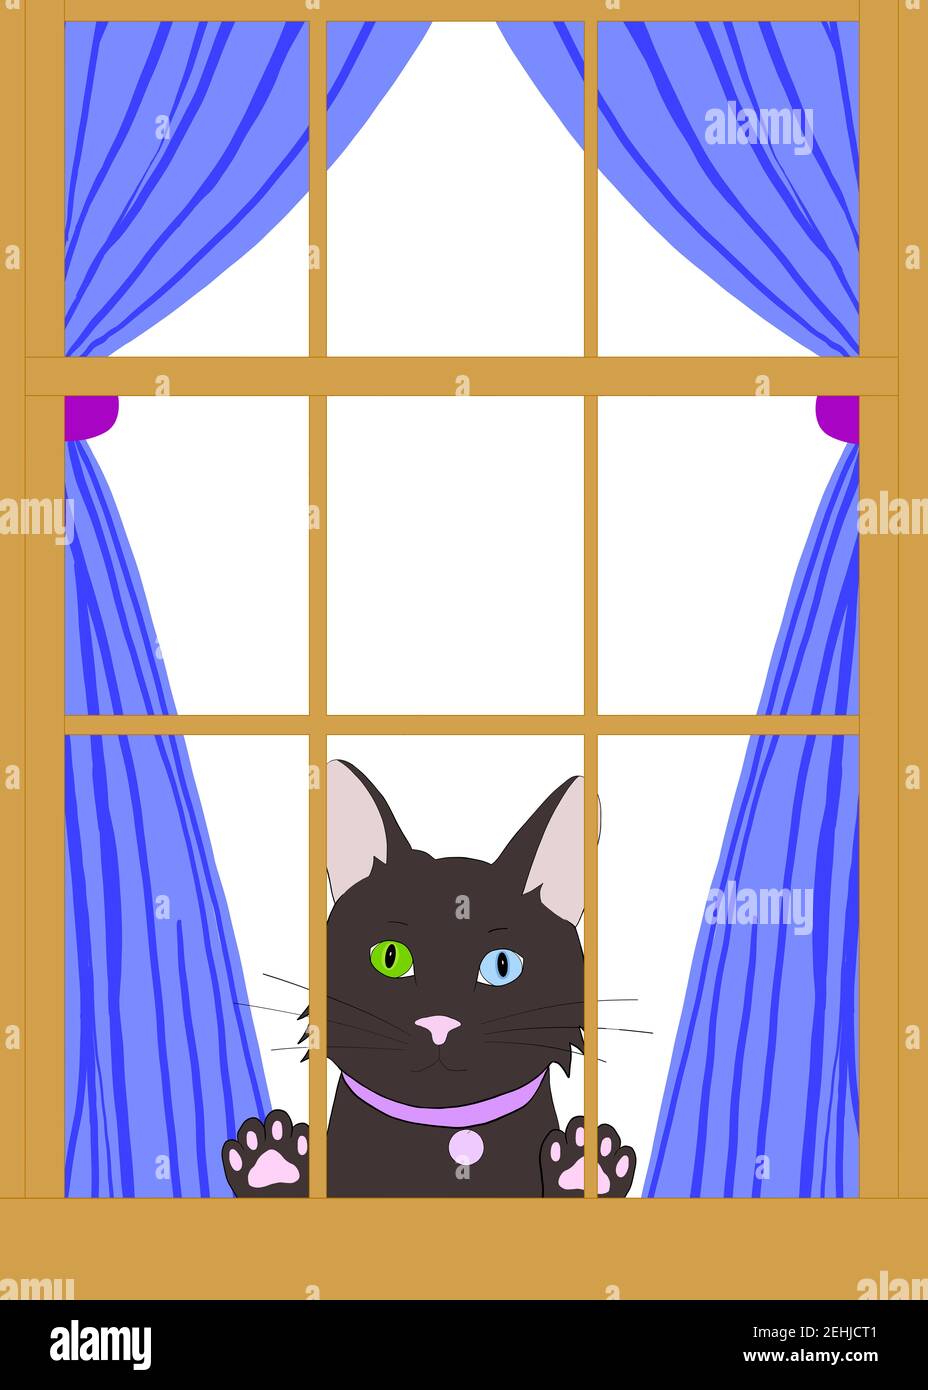 Dessin d'illustration d'un chat noir de dessin animé avec l'hétérochromie peaking à travers une fenêtre en bois brun avec des pattes sur le verre. Regarder le spectateur longi Banque D'Images